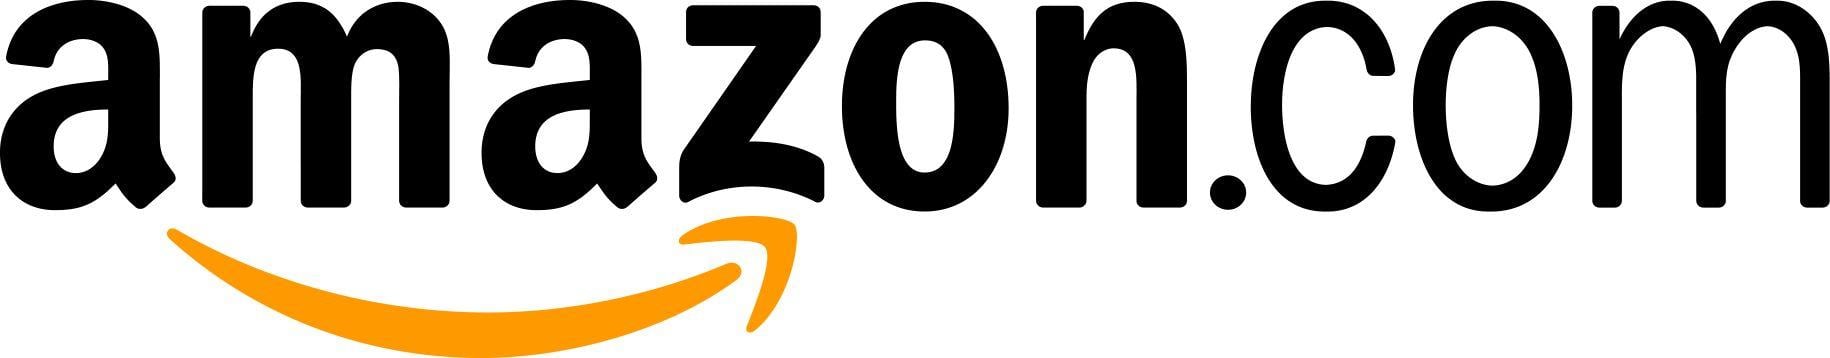 New Amazon Prime Logo - Images - Logos